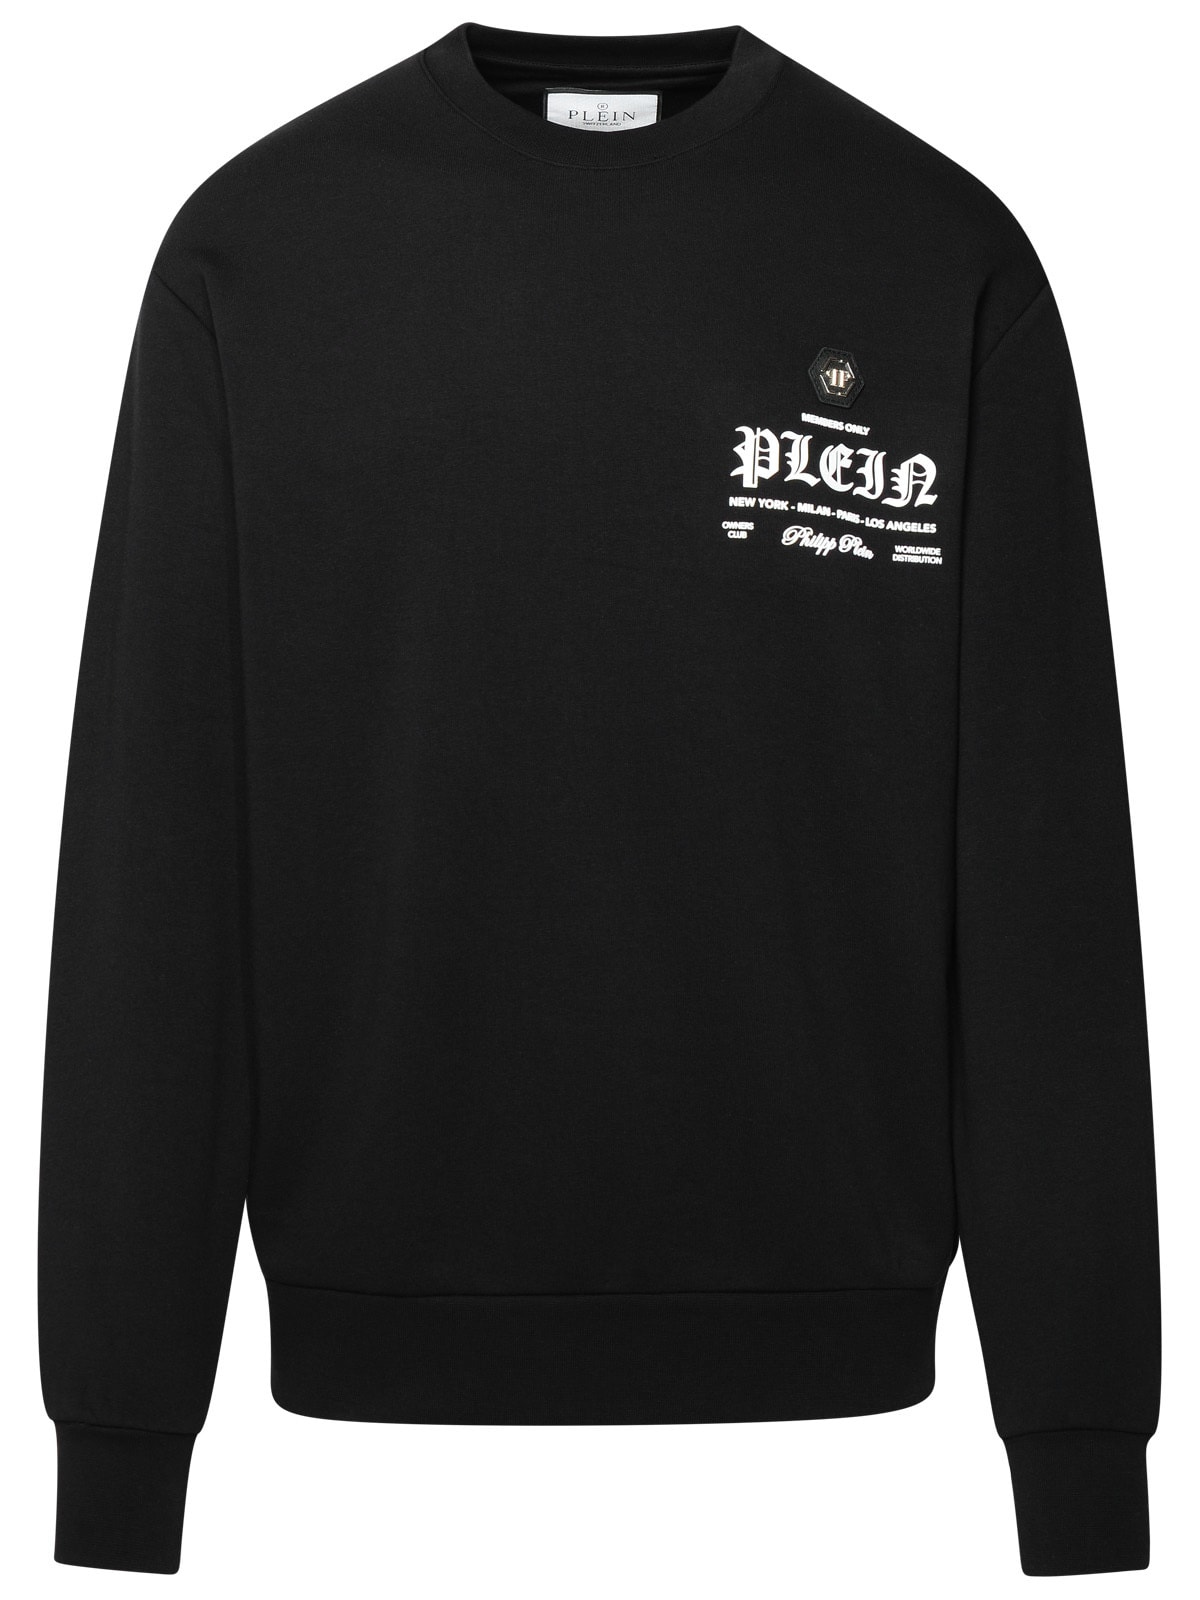 Shop Philipp Plein Black Cotton Blend Sweatshirt